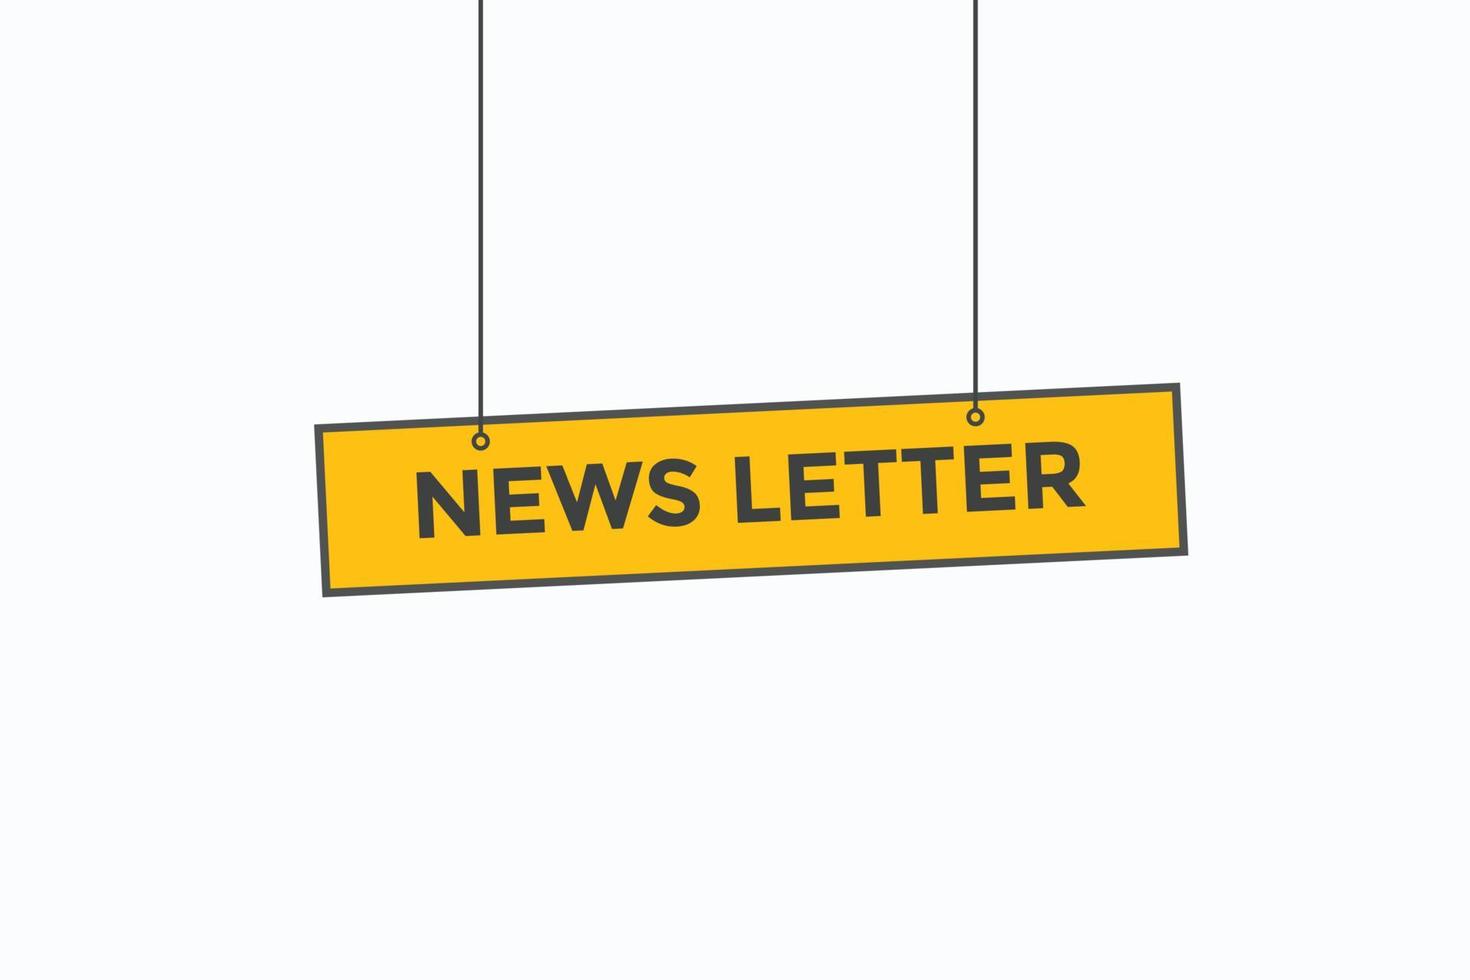 news letter button vectors.sign label speech bubble news letter vector